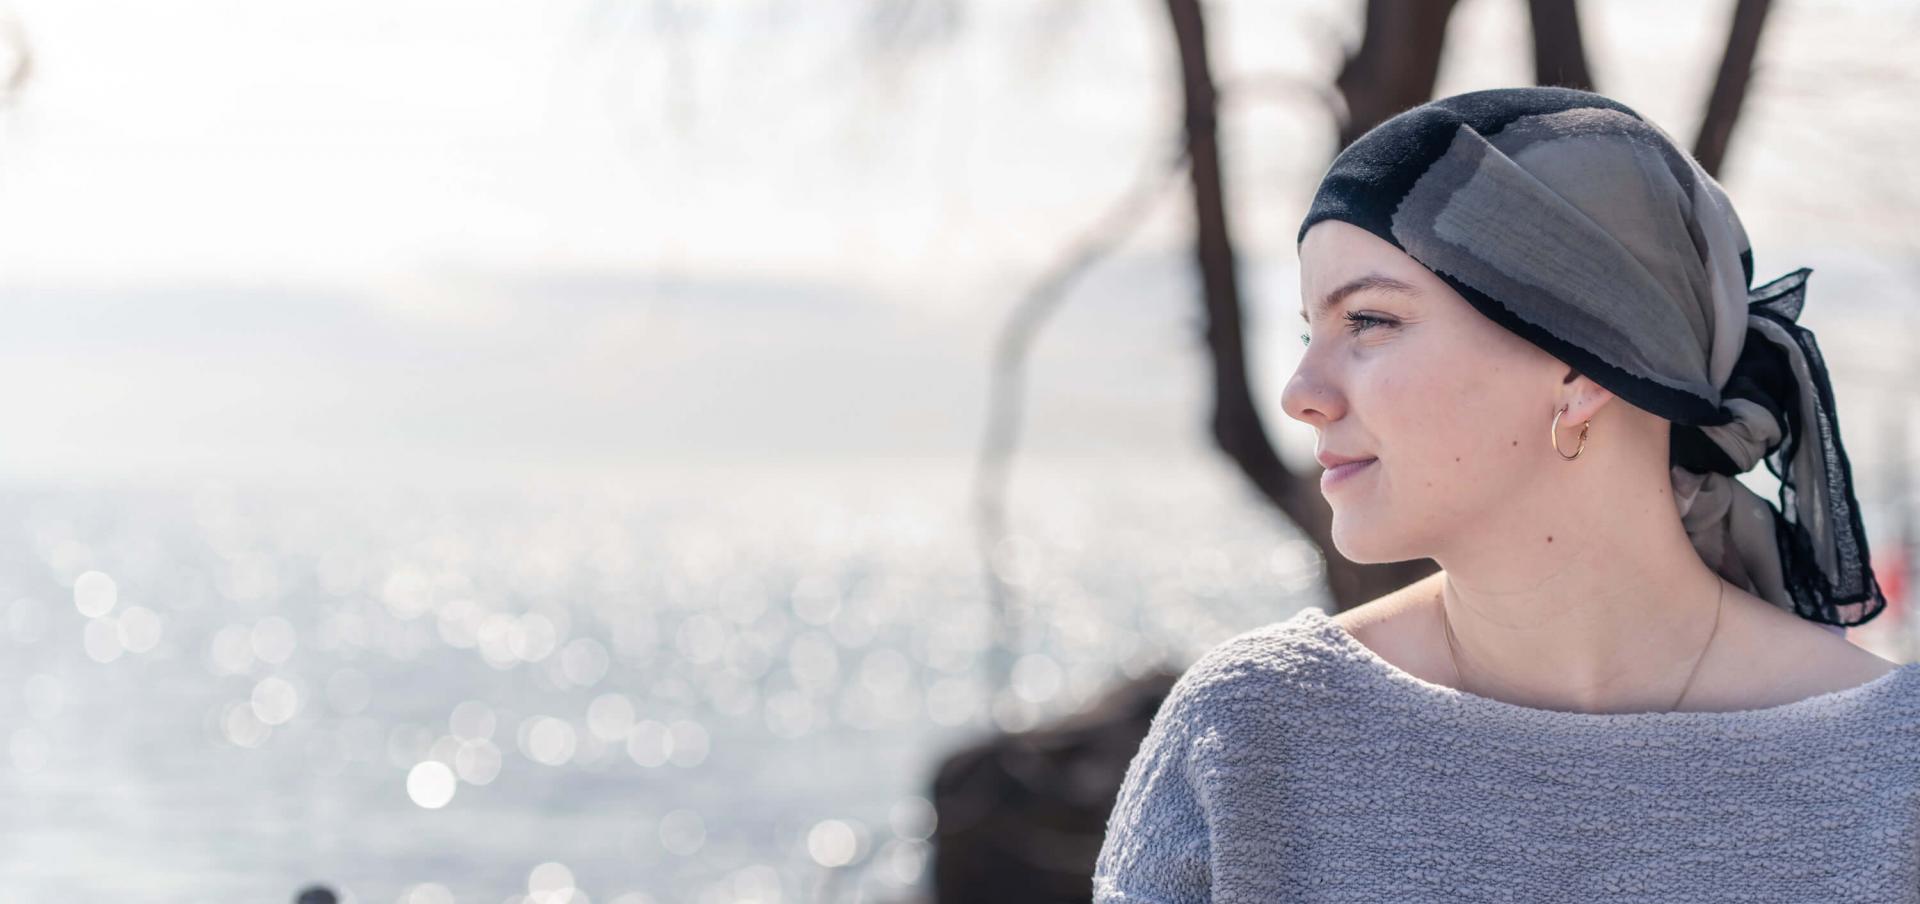 Eine Frau mit Krebserkrankung trägt ein Kopftuch und blickt zuversichtlich auf das Meer hinaus